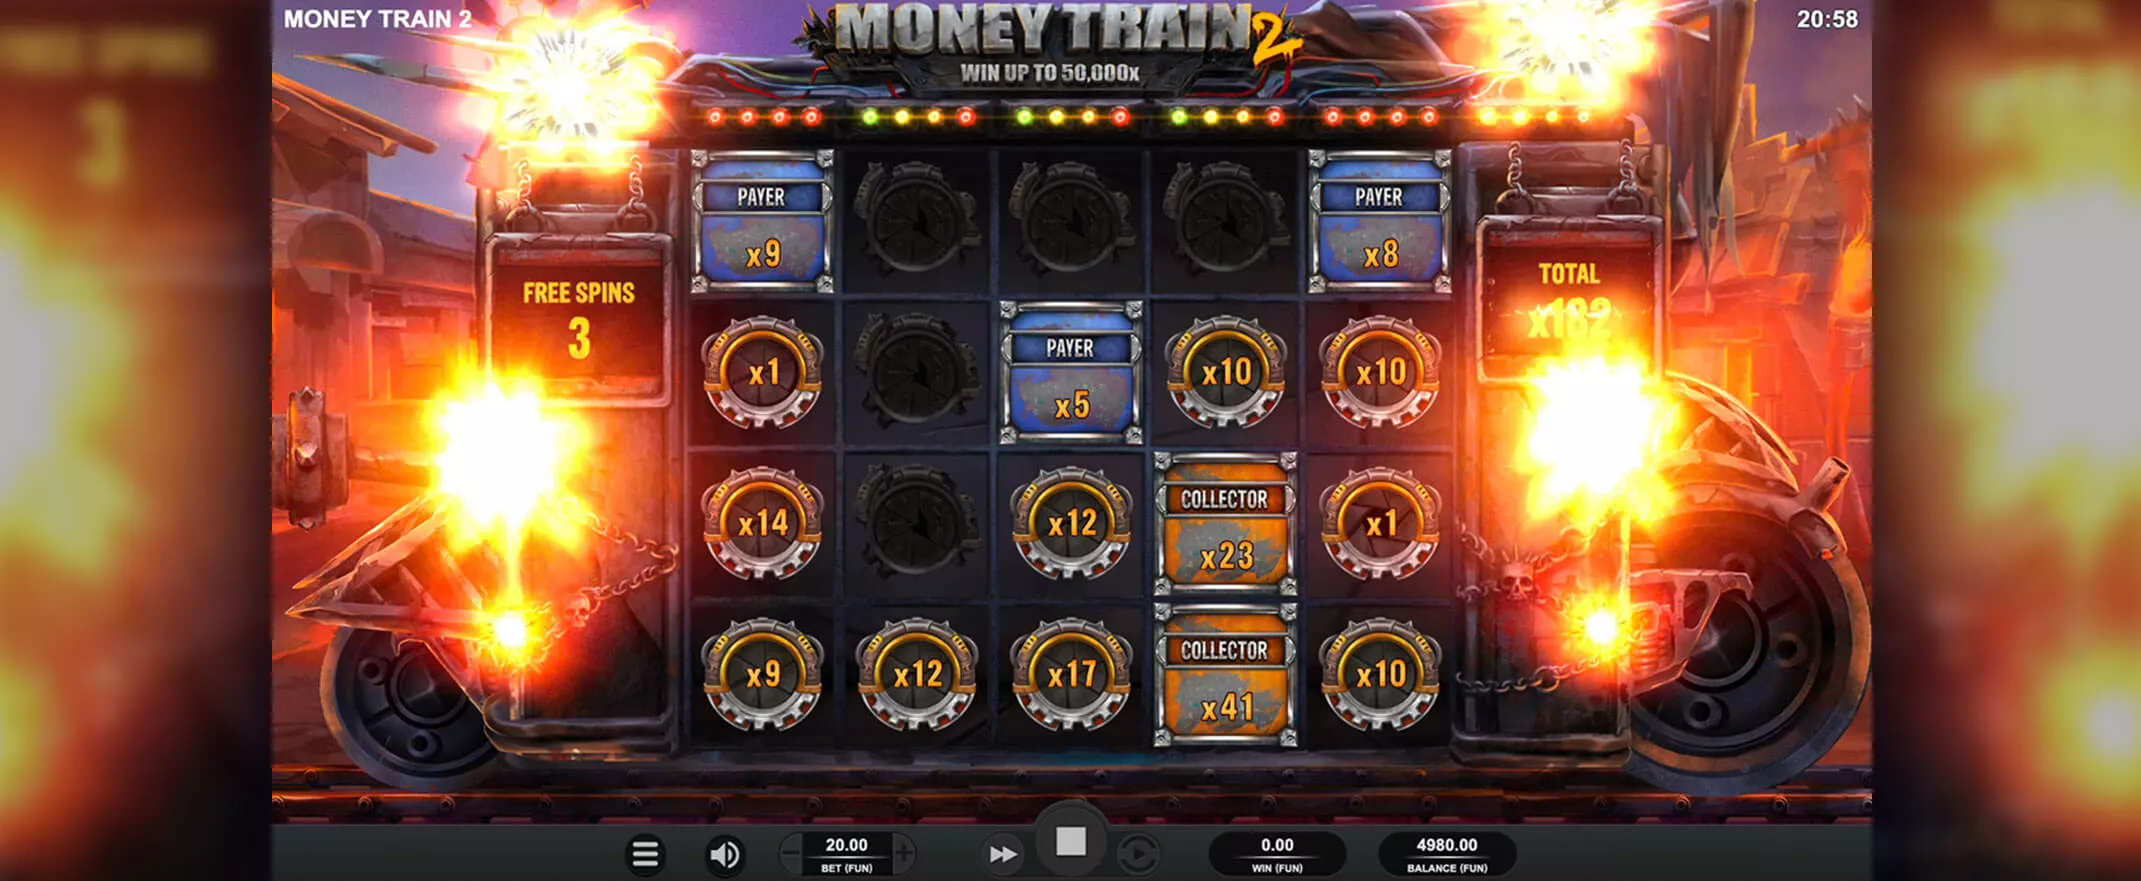 Money Train 2 screenshot of the bonus round